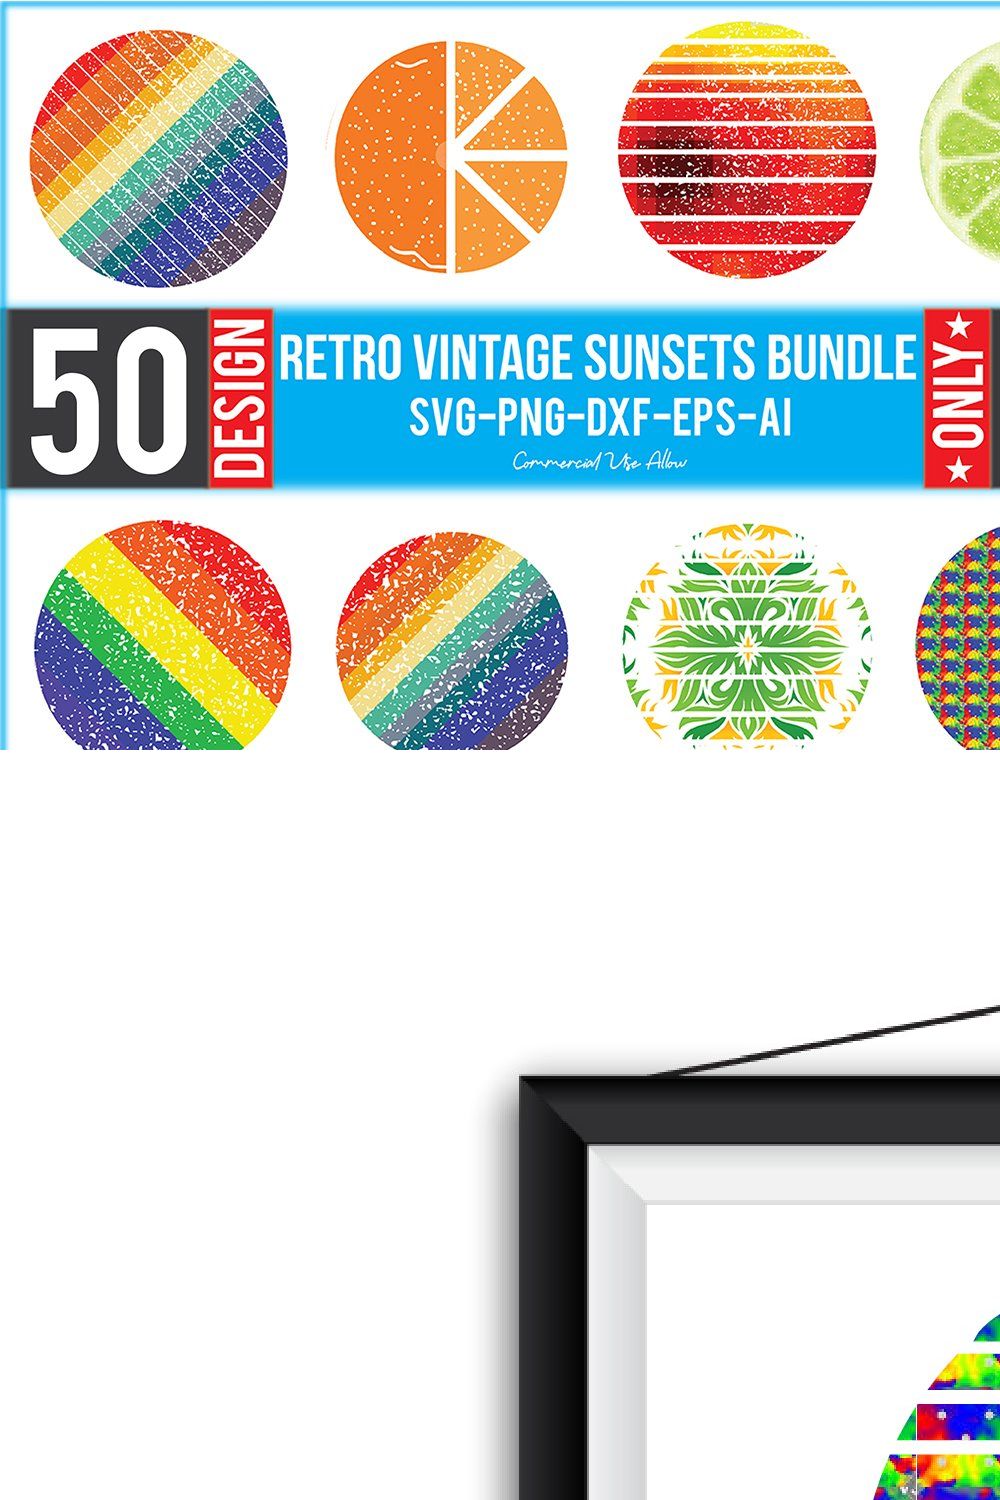 Retro Vintage Sunset Bundle pinterest preview image.